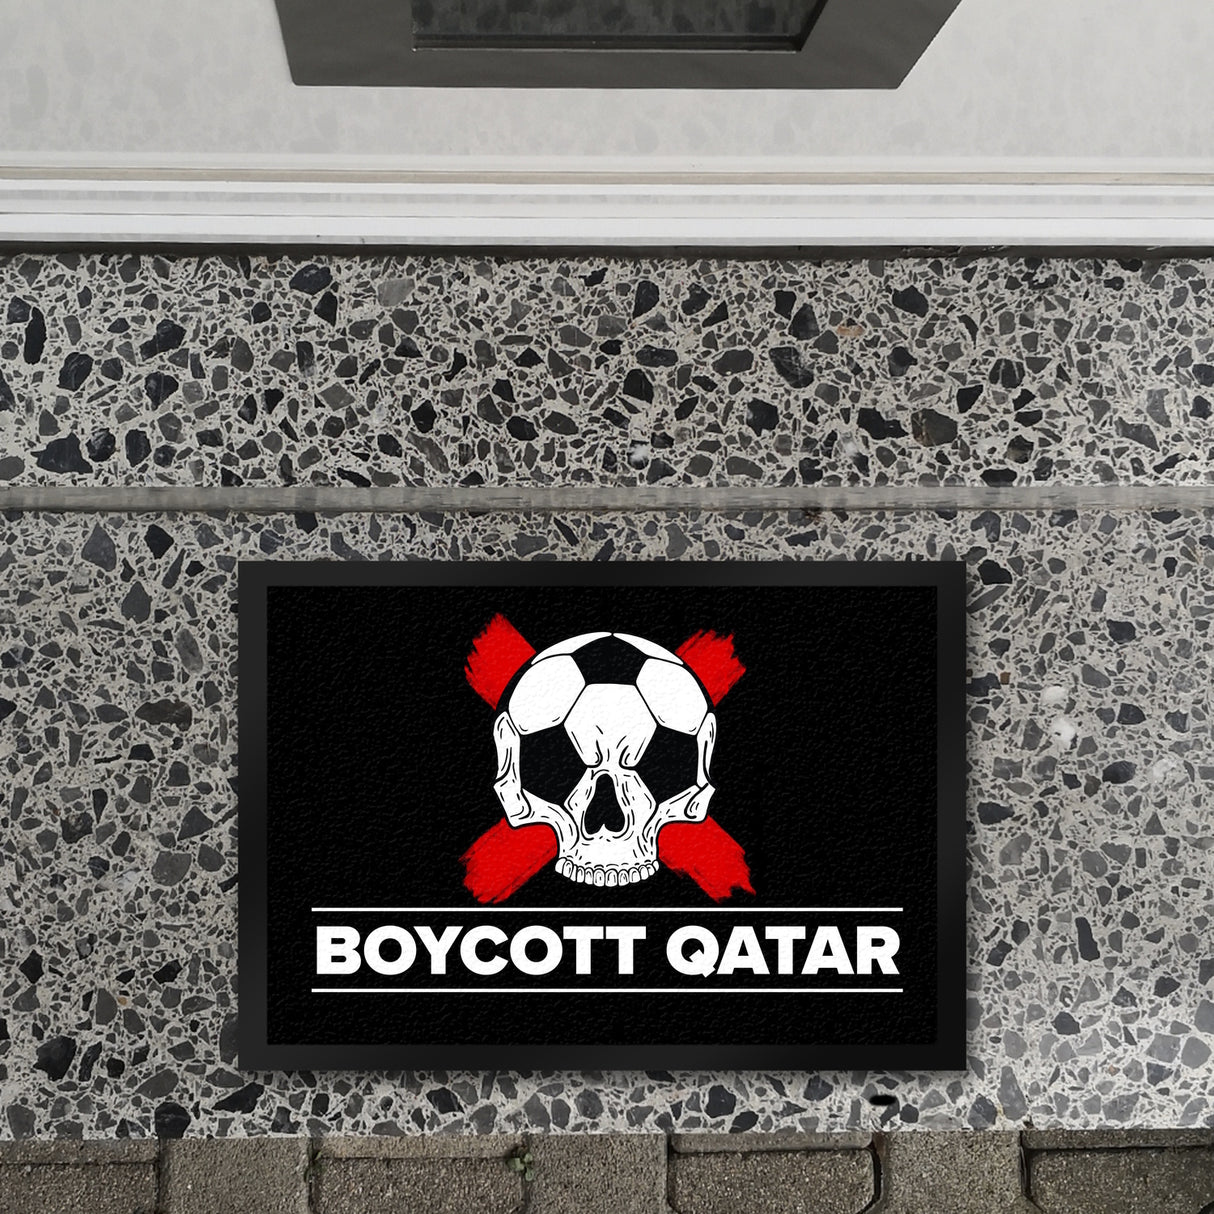 Boycott Qatar Fußmatte mit Fußball-Totenkopf